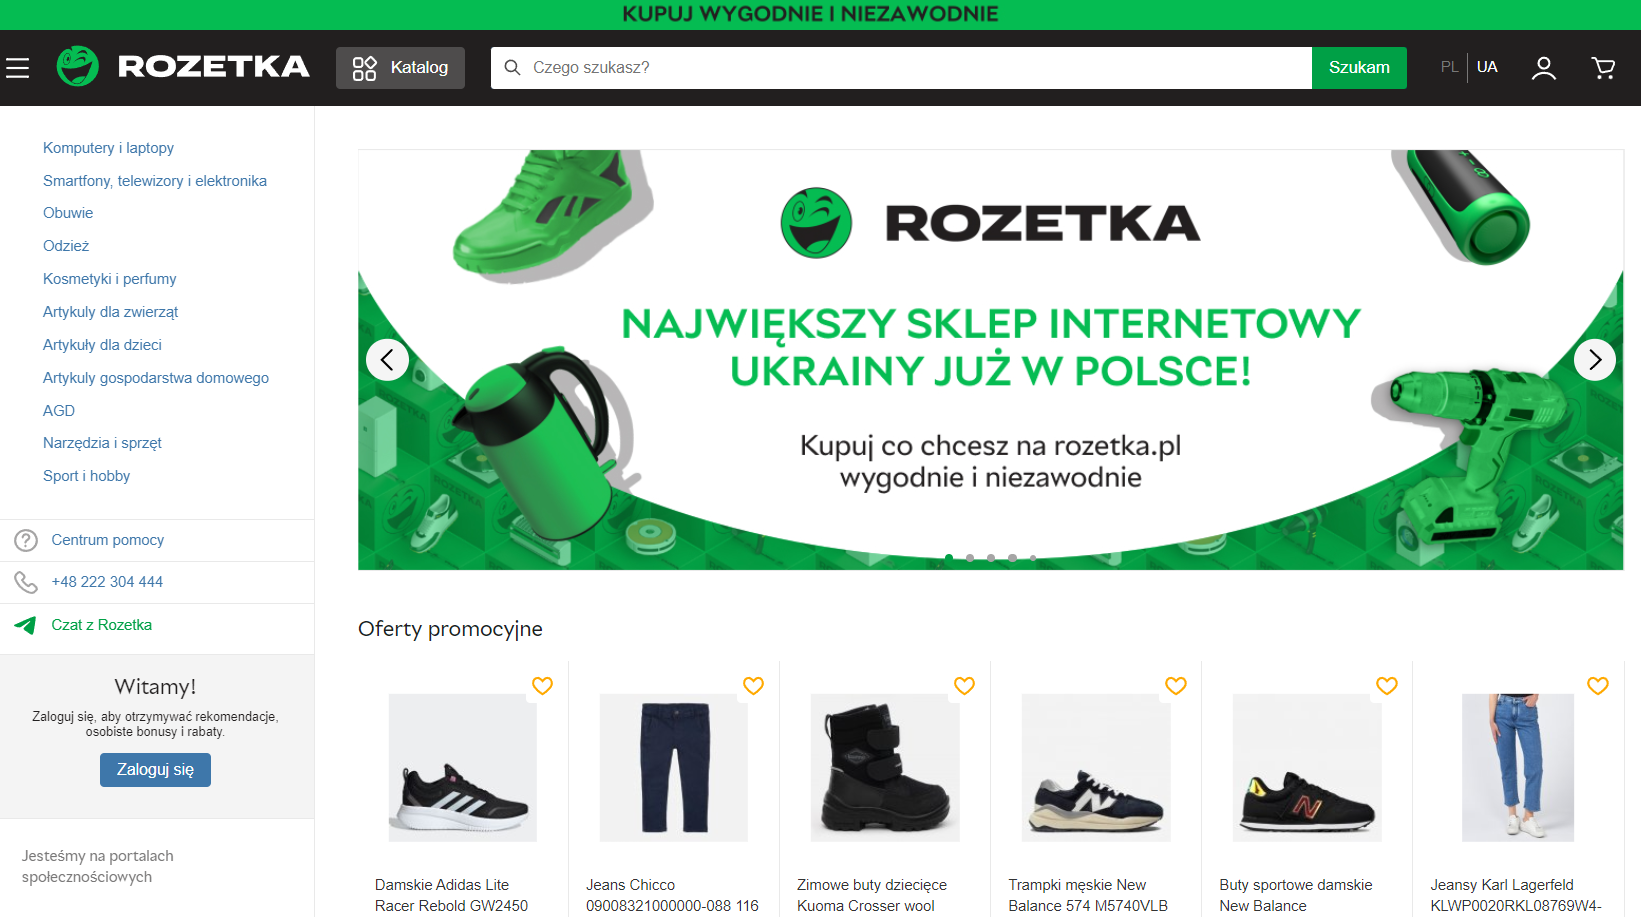 Rozetka відкрила в Польщі інтернет-магазин і шукає нових співробітників